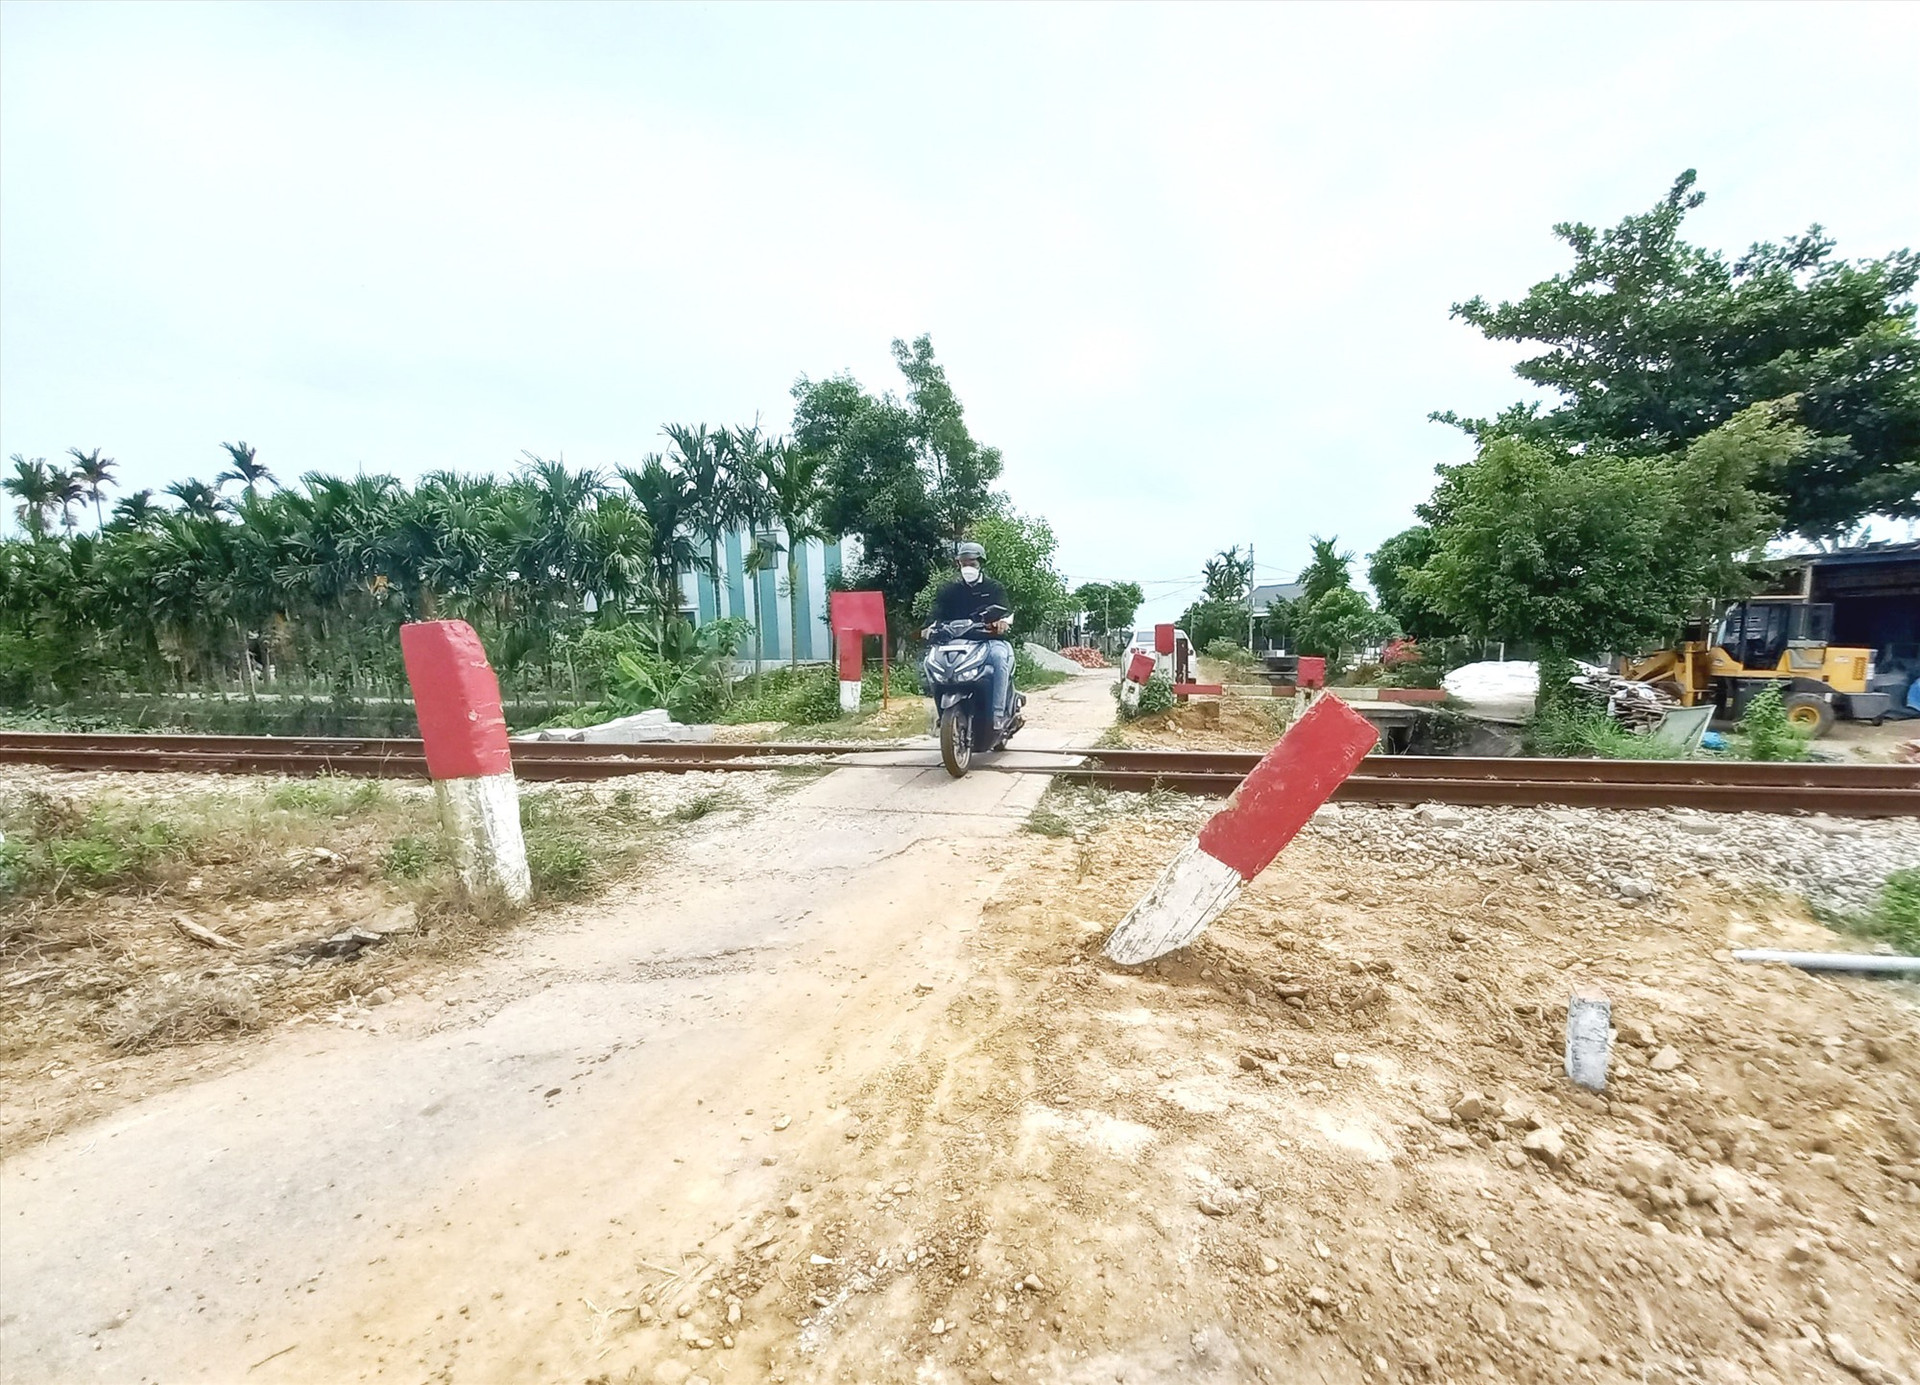 Huyện Thăng Bình cần sớm xây dựng đường ngang tại lý trình kmm845+875 để xóa lối đi tự mở. Ảnh: C.T